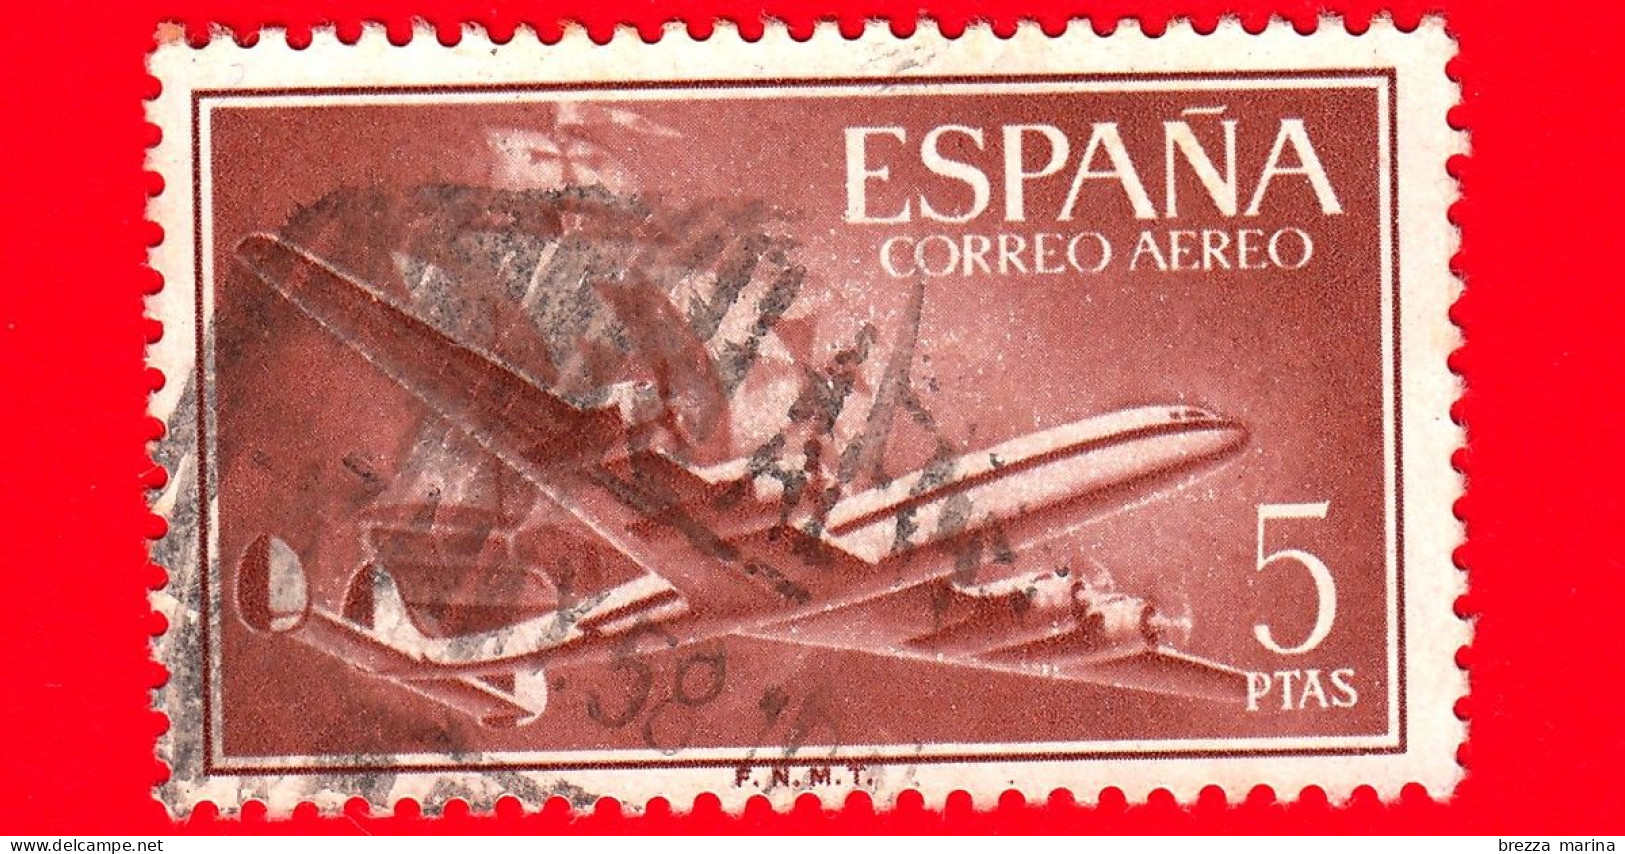 SPAGNA - Usato - 1955 - Super Costellazione E Nave 'Santa Maria' - Posta Aerea - 5 - Used Stamps